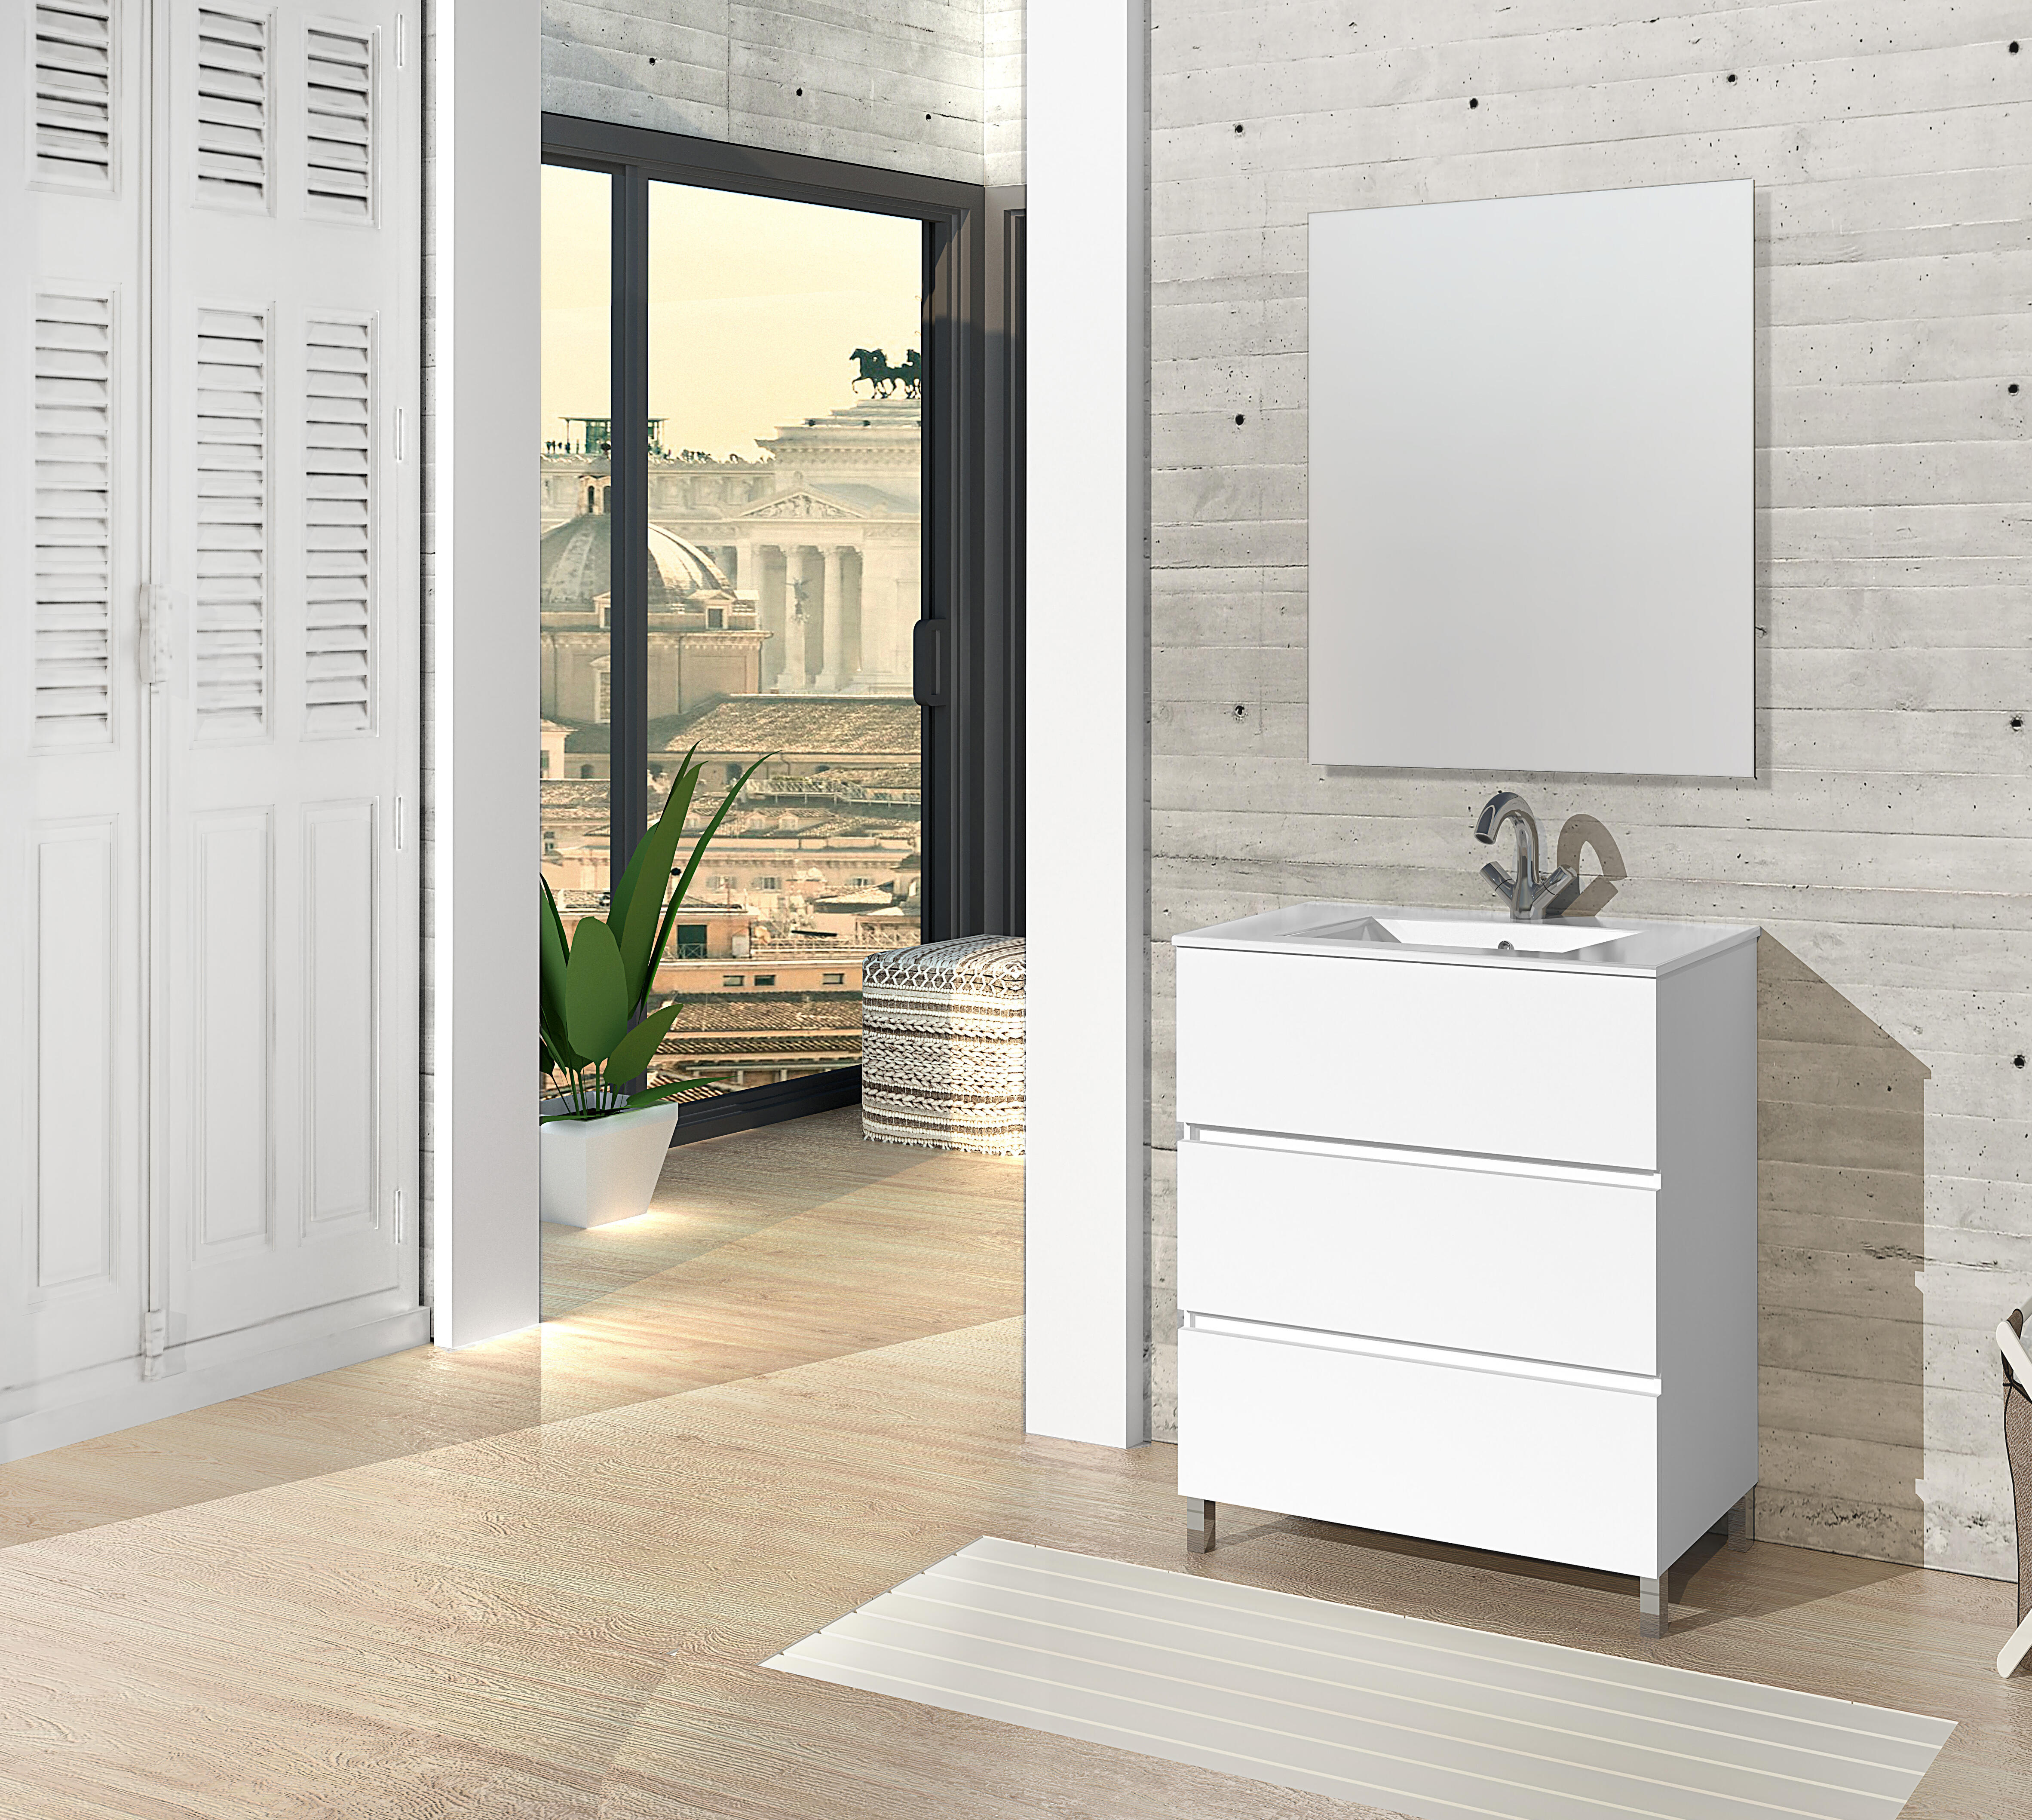 Mueble de baño con espejo bseda blanco 60x45 cm